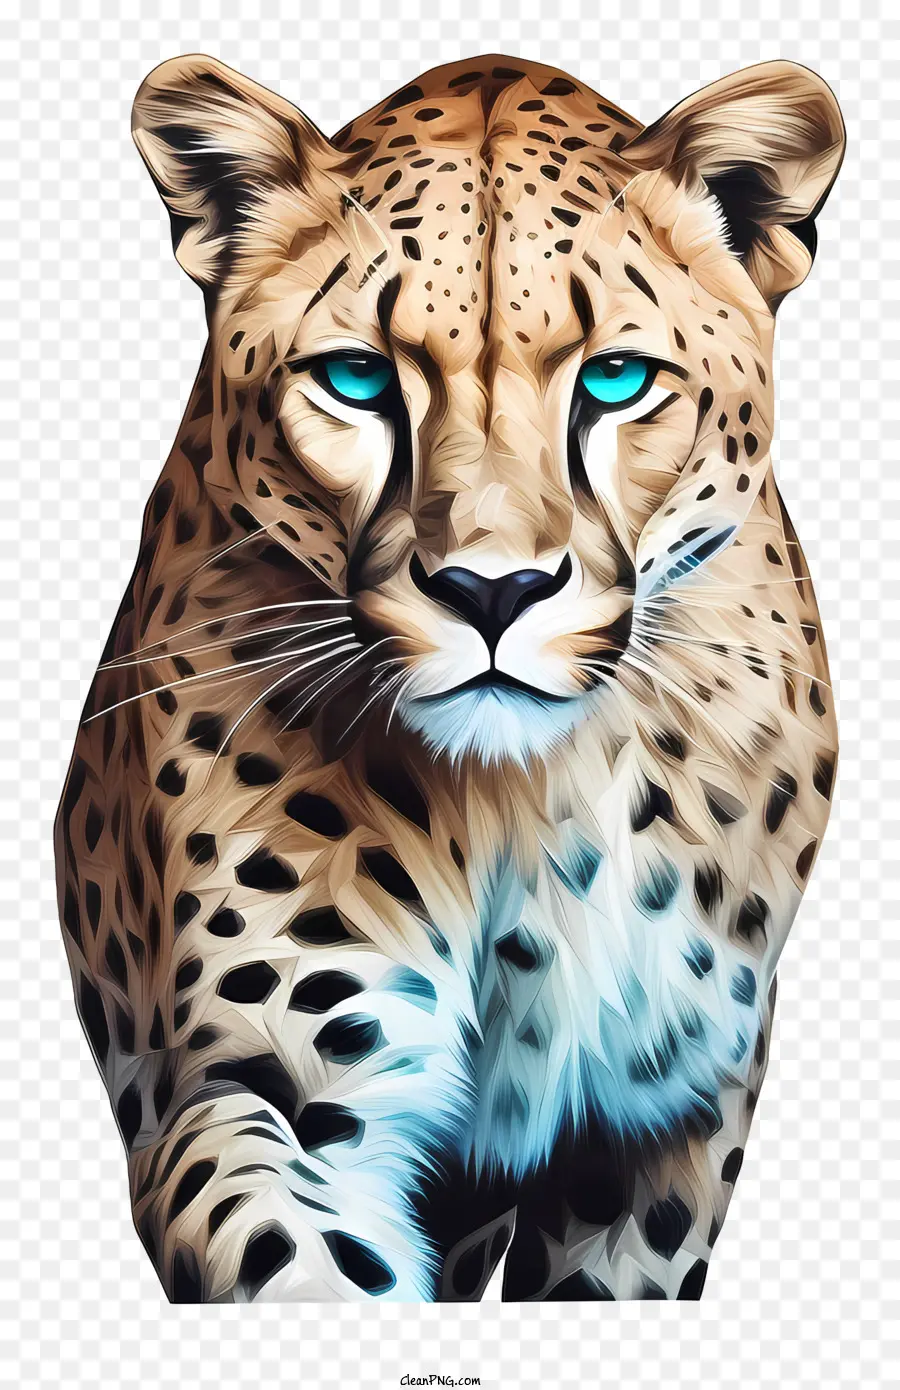 Leopardenblaue Augen Hinterbeine fleckten Pelzmund offen - Leopard mit blauen Augen, die auf Hinterbeinen stehen